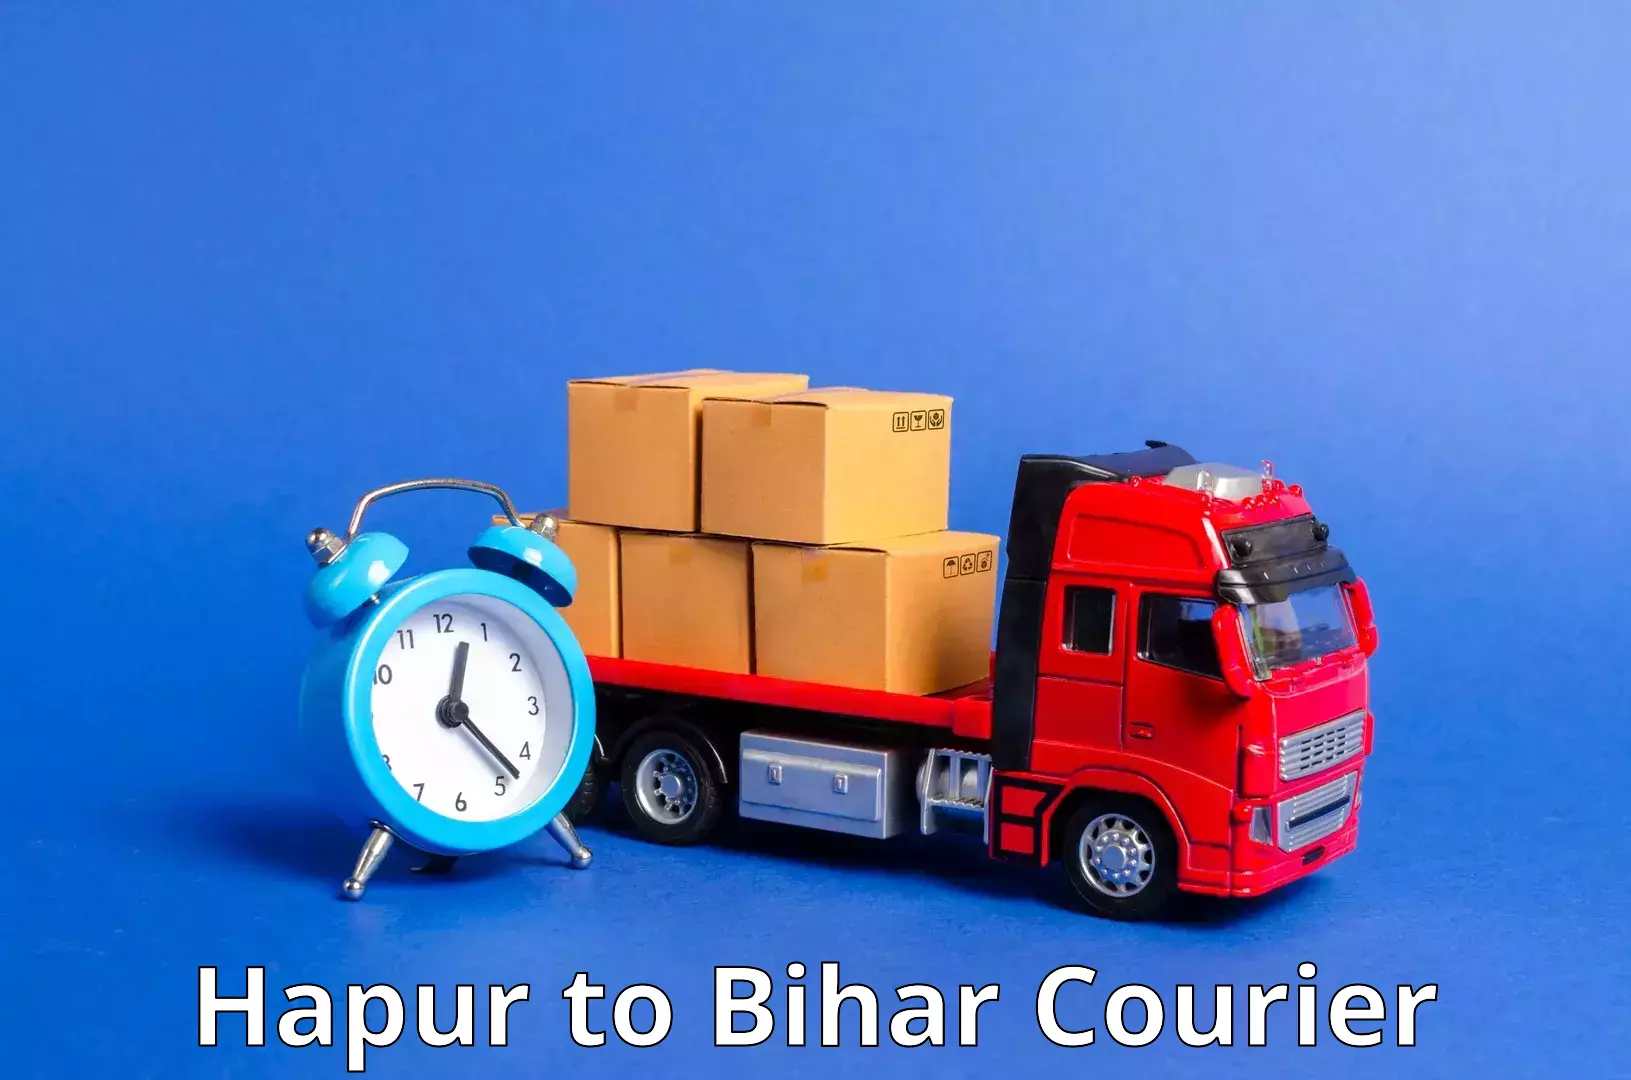 Doorstep delivery service Hapur to Bihar